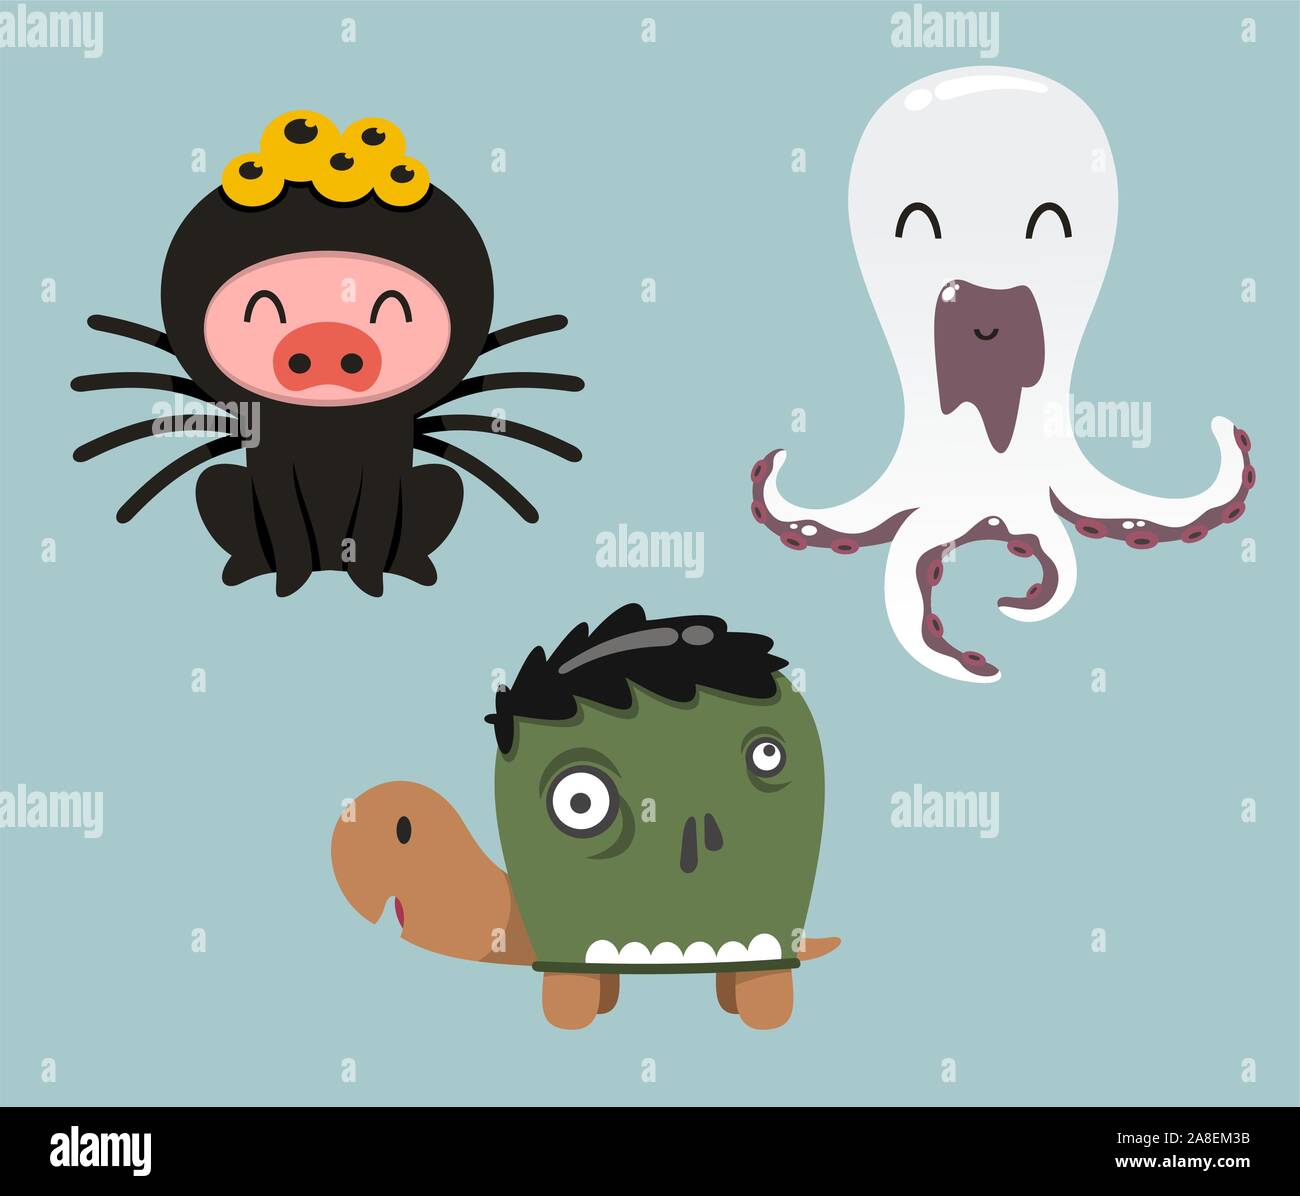 Animaux Halloween costumes dans la caricature de porc, de la tortue et de l'octopus Illustration de Vecteur